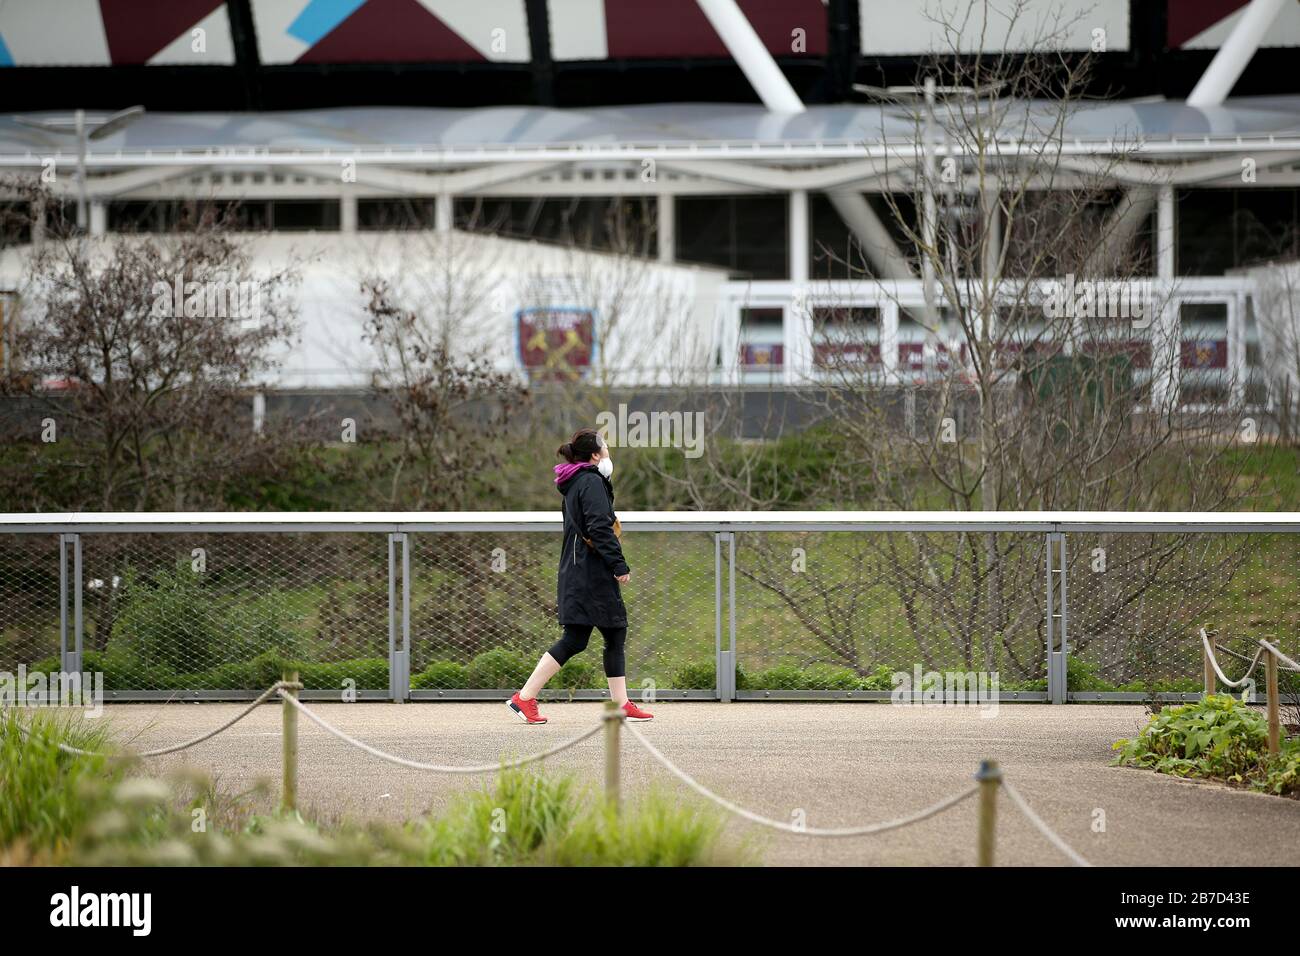 Une personne portant un masque de protection est vue près du stade de Londres, où se trouve le West Ham United Football Club, après l'annonce de vendredi selon laquelle la Premier League a suspendu tous les matchs jusqu'au samedi 4 avril 2020. Banque D'Images